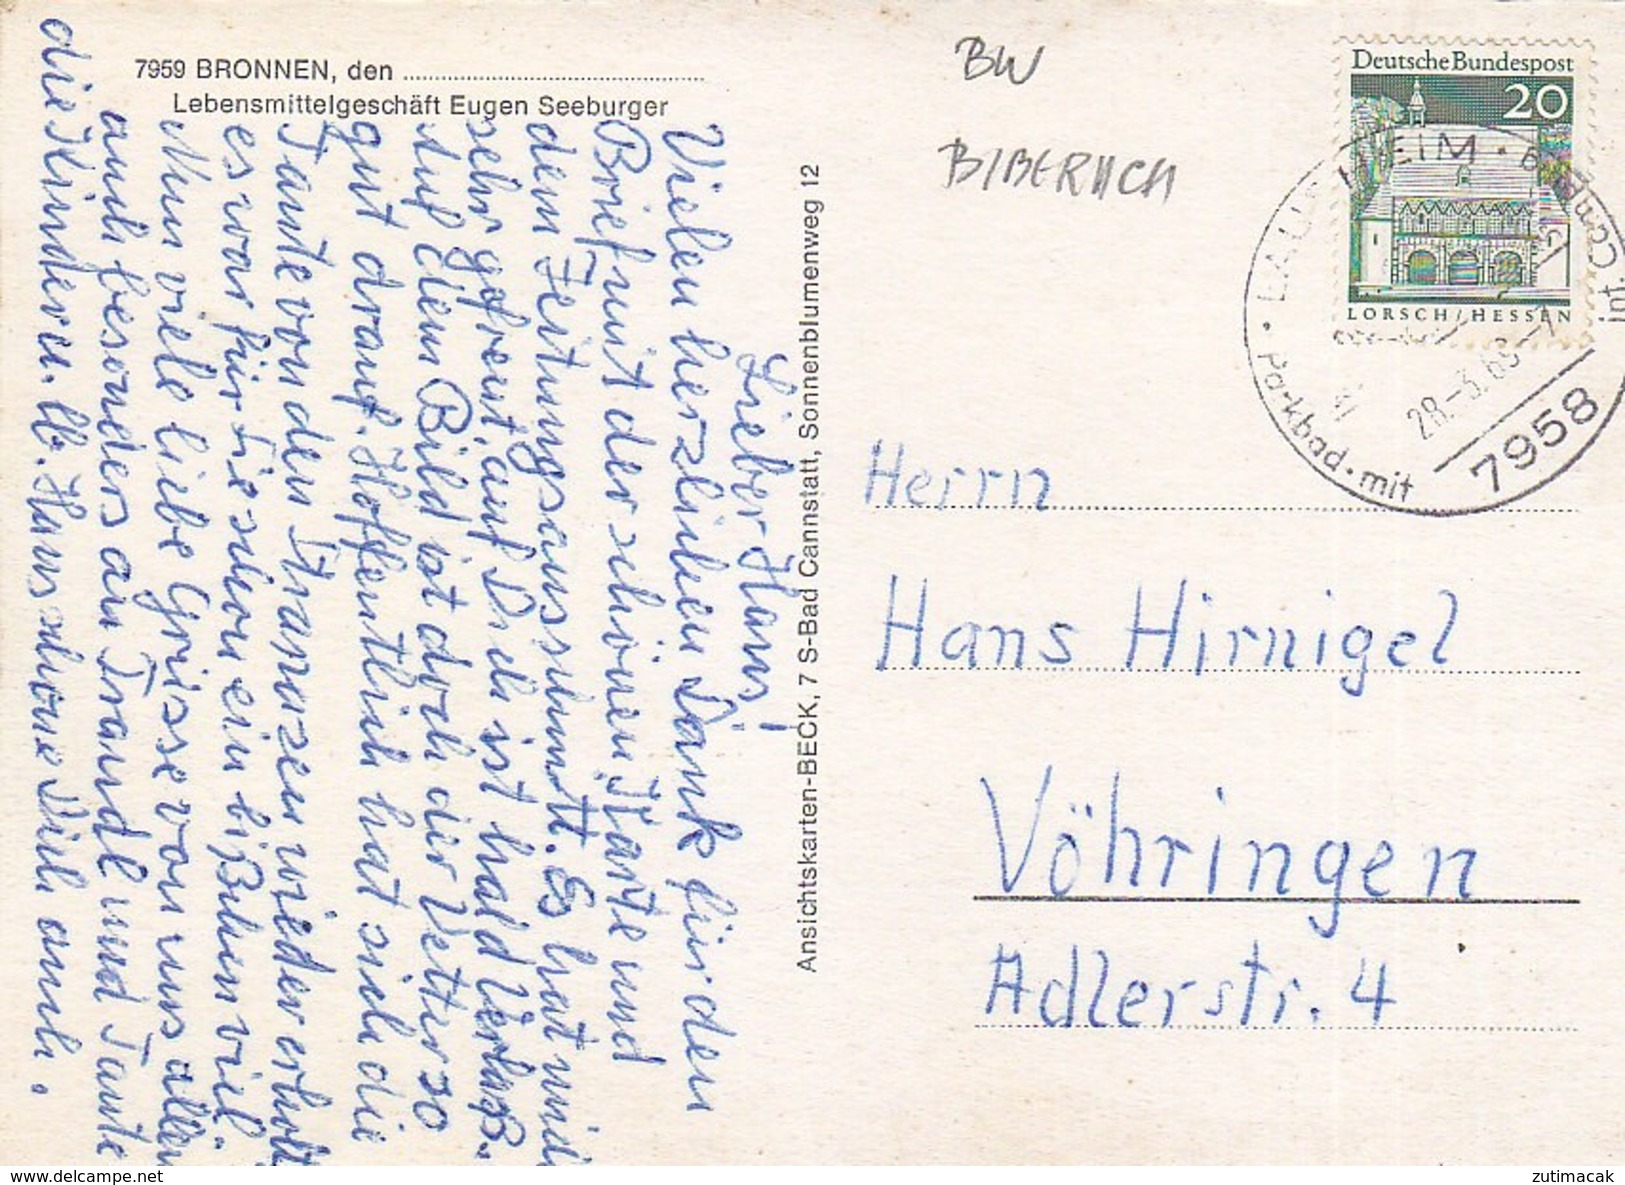 Bronnen - Eugen Seeburger Lebensmittelgeschaft 1965 - Biberach